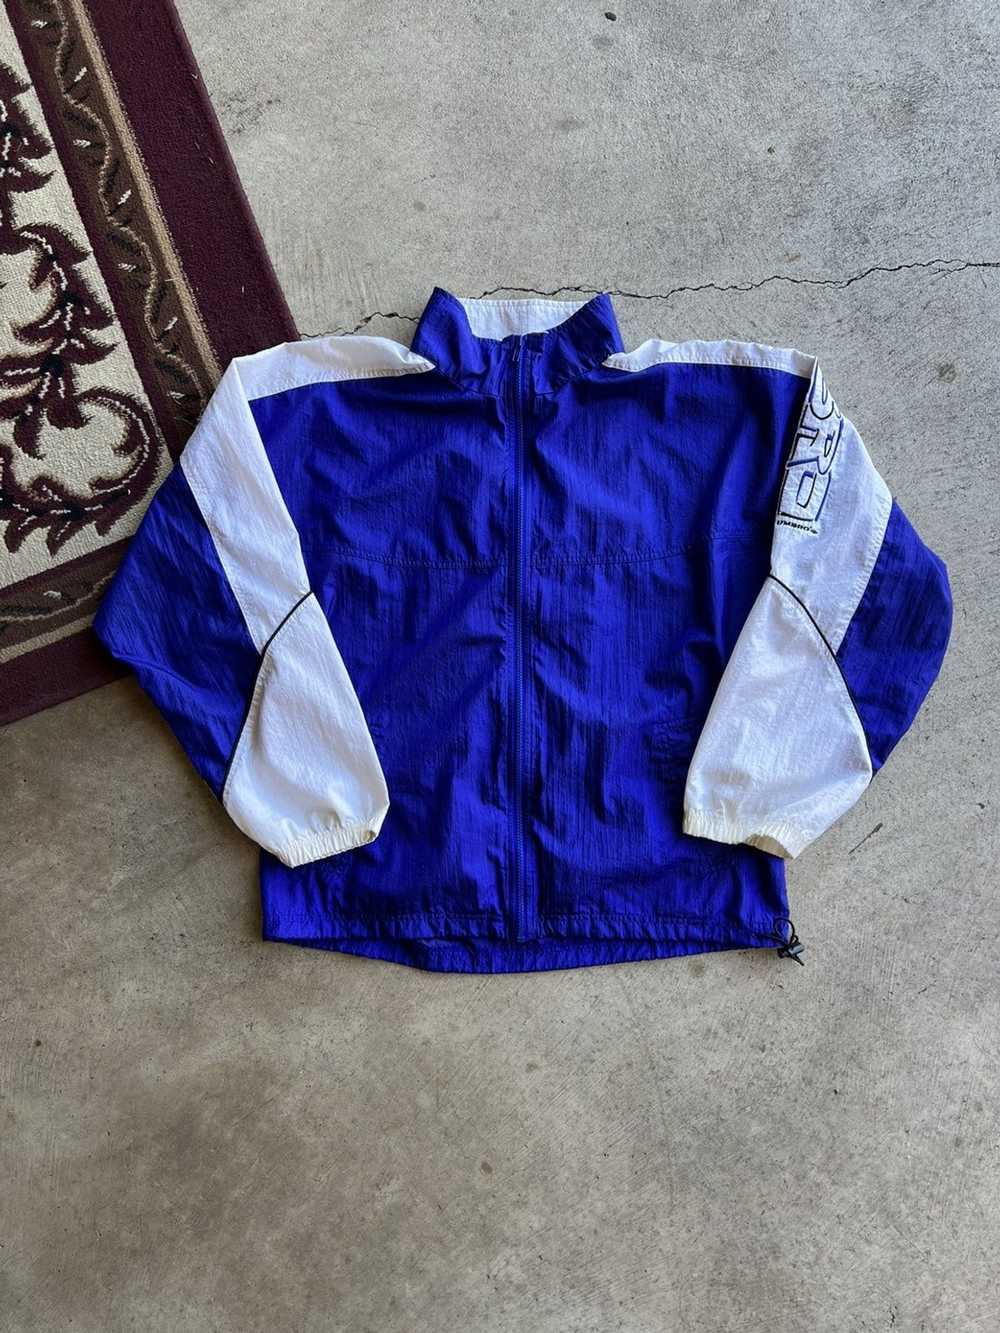 Umbro track jacket vintage - Gem